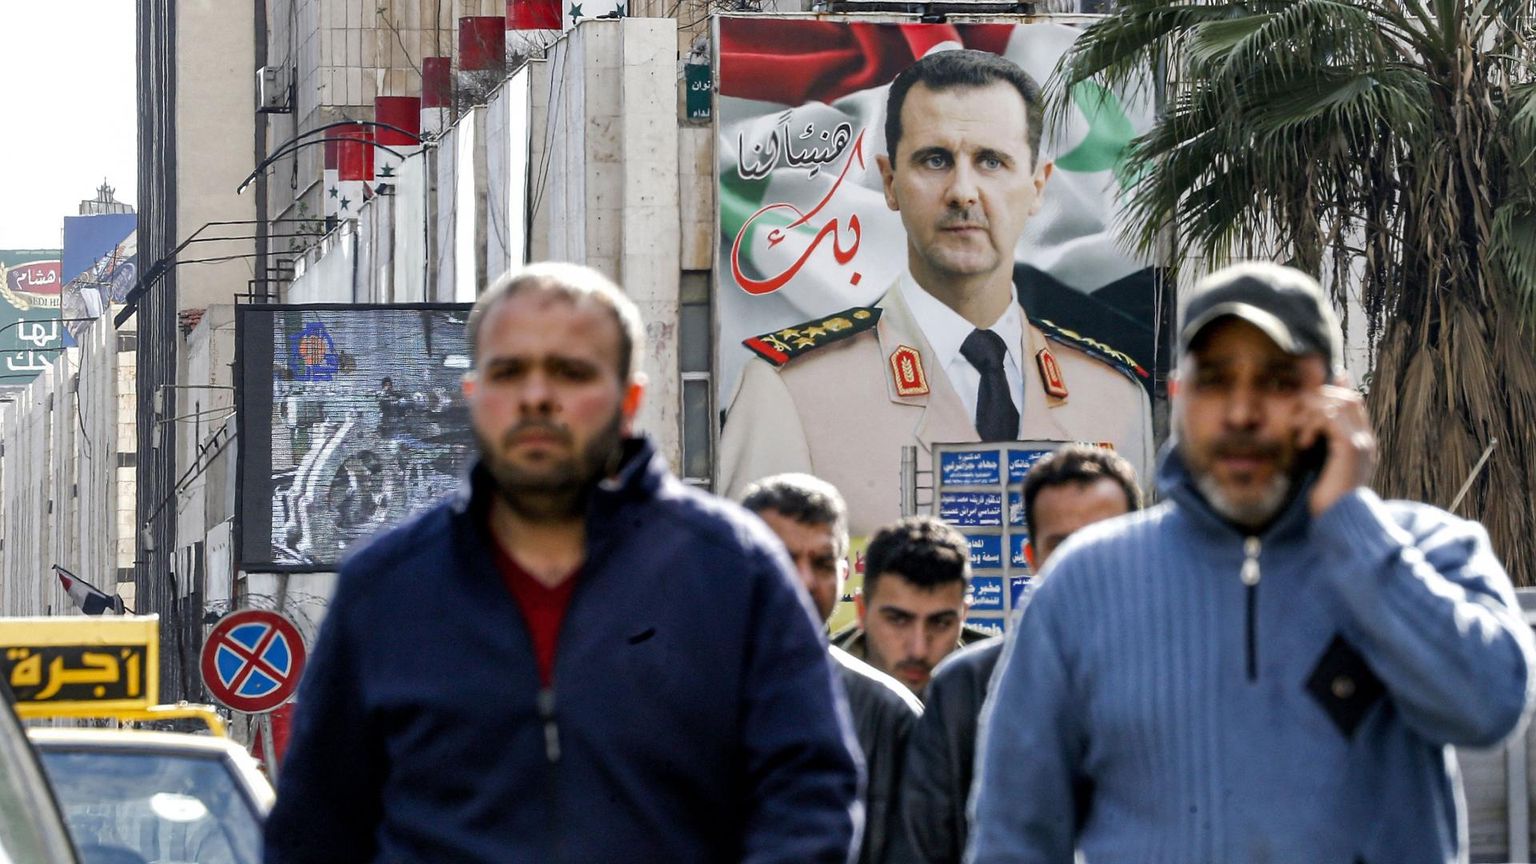 Süüria pealinna Damaskuse tänaval jalutavate inimeste kohal kõrgub presidendi Bashar al-Assadi hiiglaslik sõjaväemundris portree. Tema diktatuurirežiimi piinamisvõtted on nõudnud alates araabia kevade protestide lahvatamisest tuhandete inimese elu. 